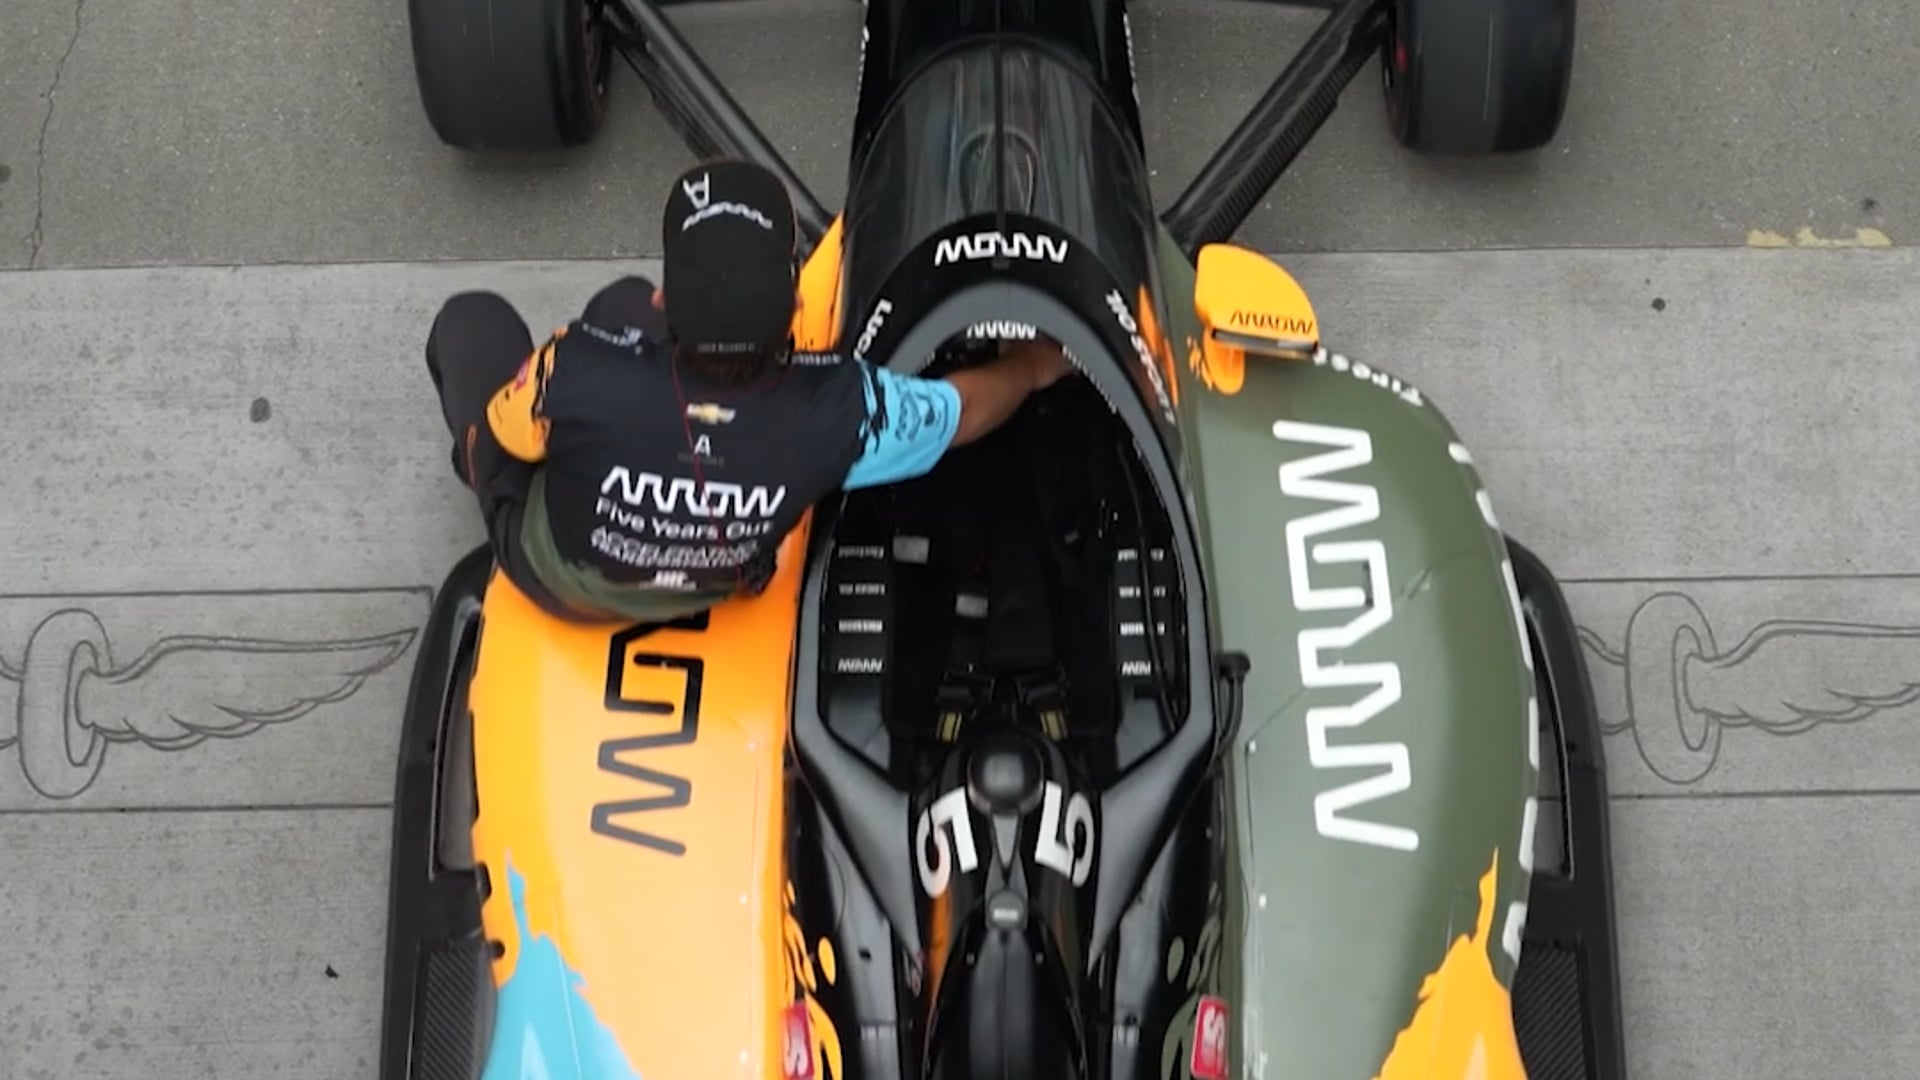 2022 Indianapolis 500 - McLaren Racing